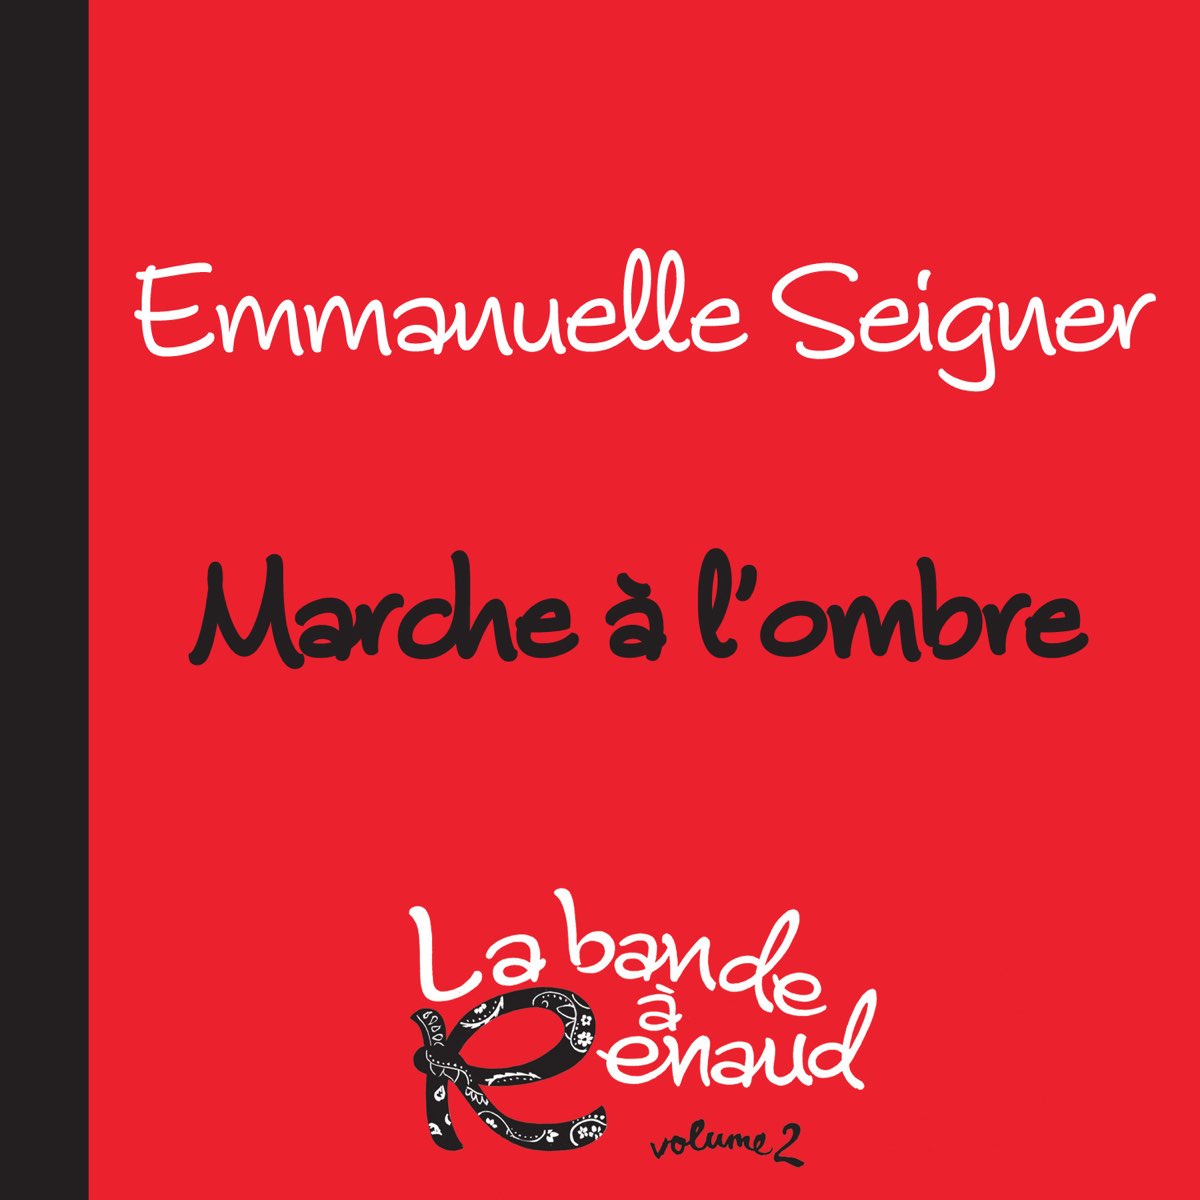 Marche à l'ombre (La bande à Renaud 2) - Single par Emmanuelle Seigner sur  Apple Music